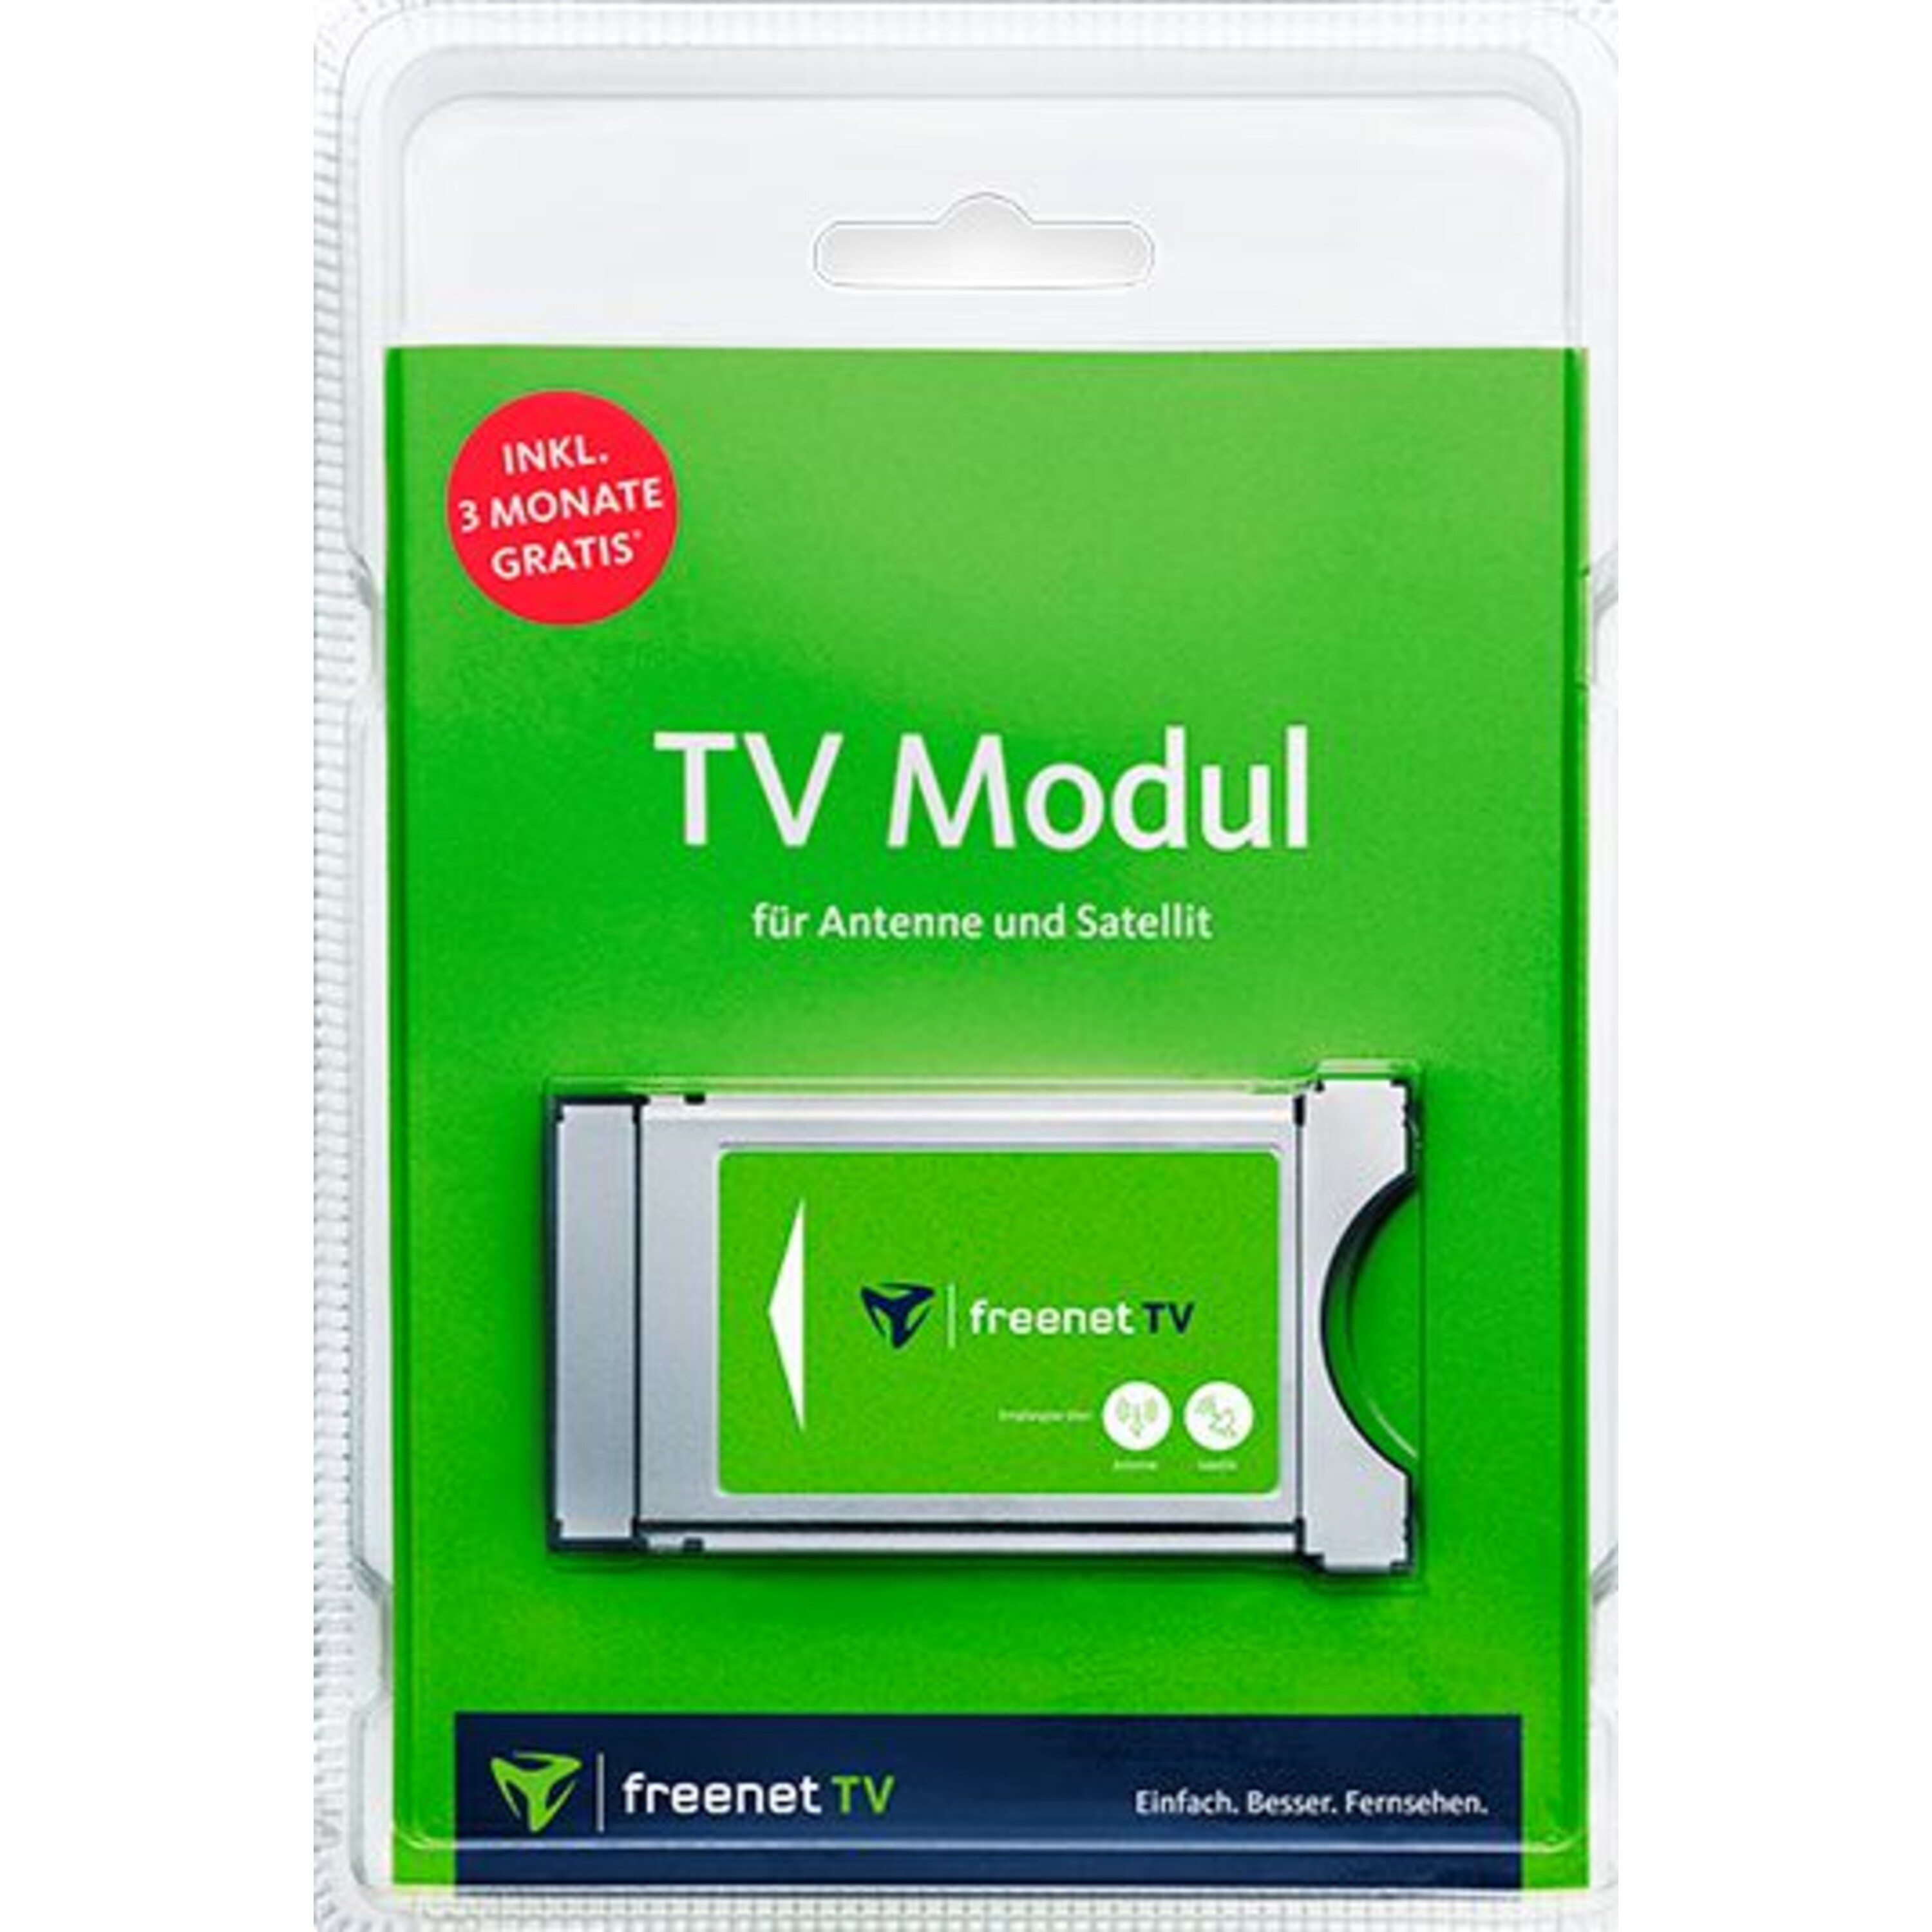 MEDION® LIFE® E14013 TV, 100,3 cm (40'') Full HD Fernseher, inkl. DVB-T 2 HD Modul (3 Monate freenet TV gratis) - ARTIKELSET